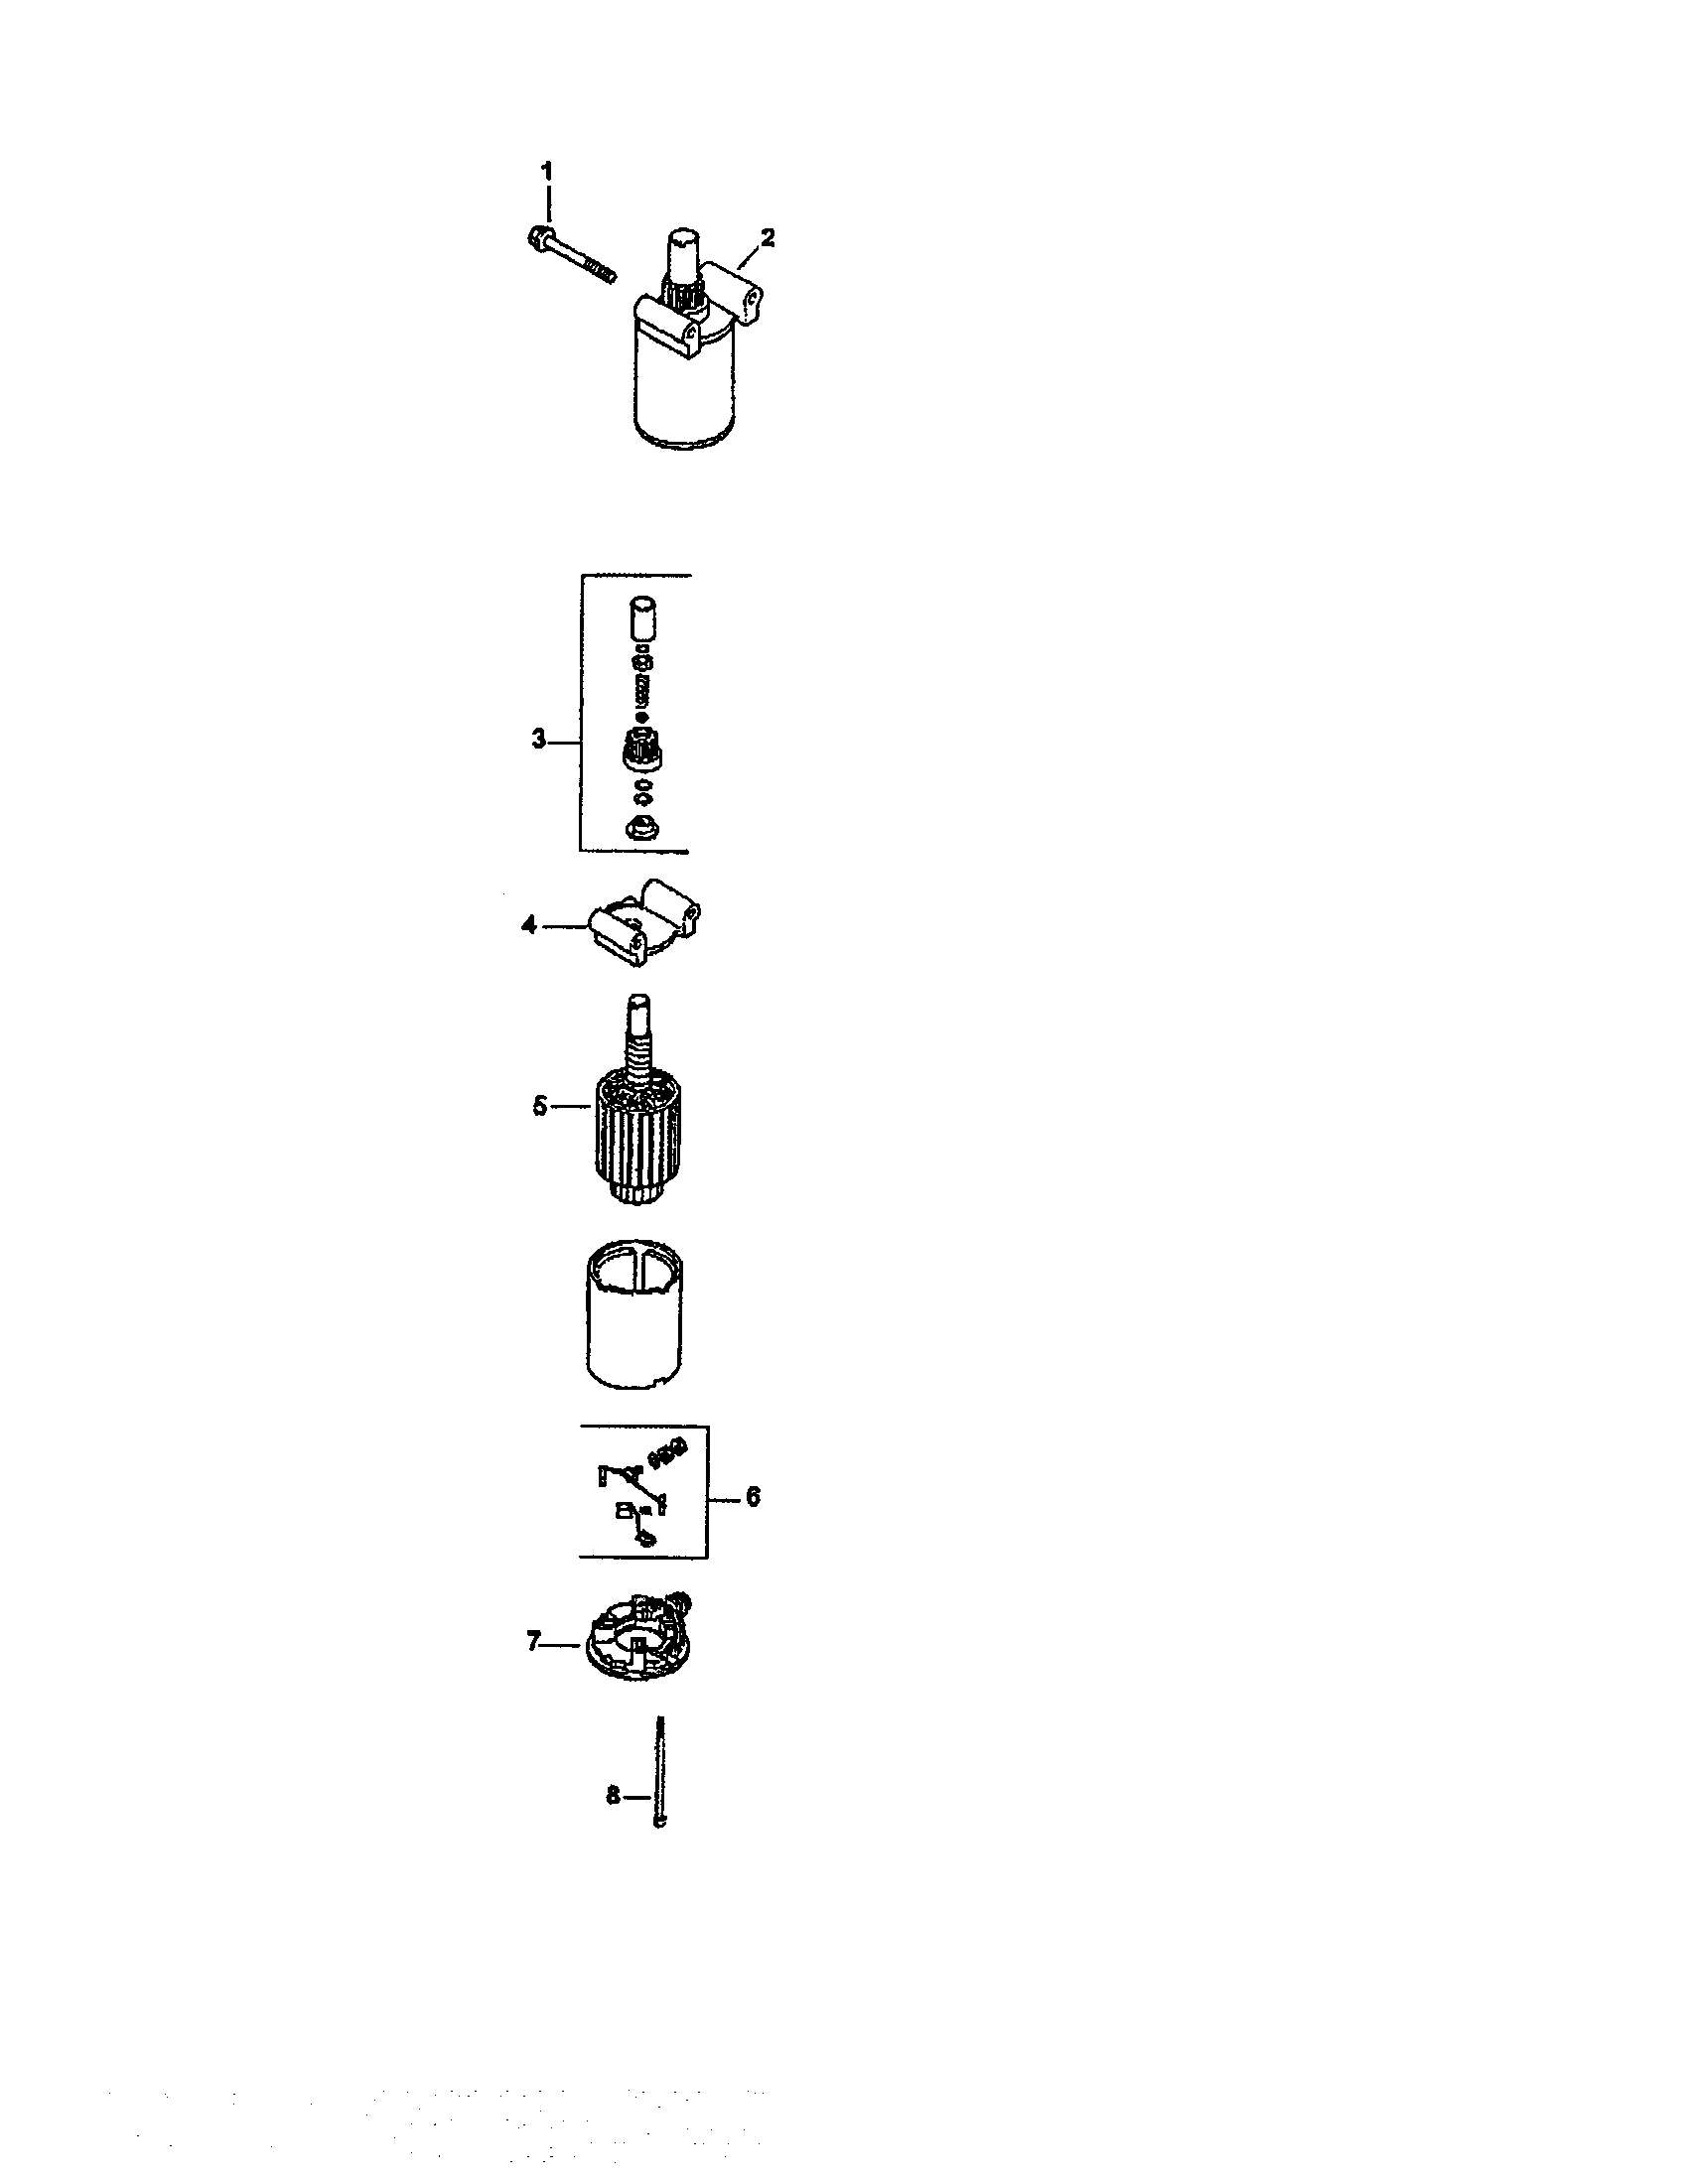 kohler cv490 type 27508 wiring diagram